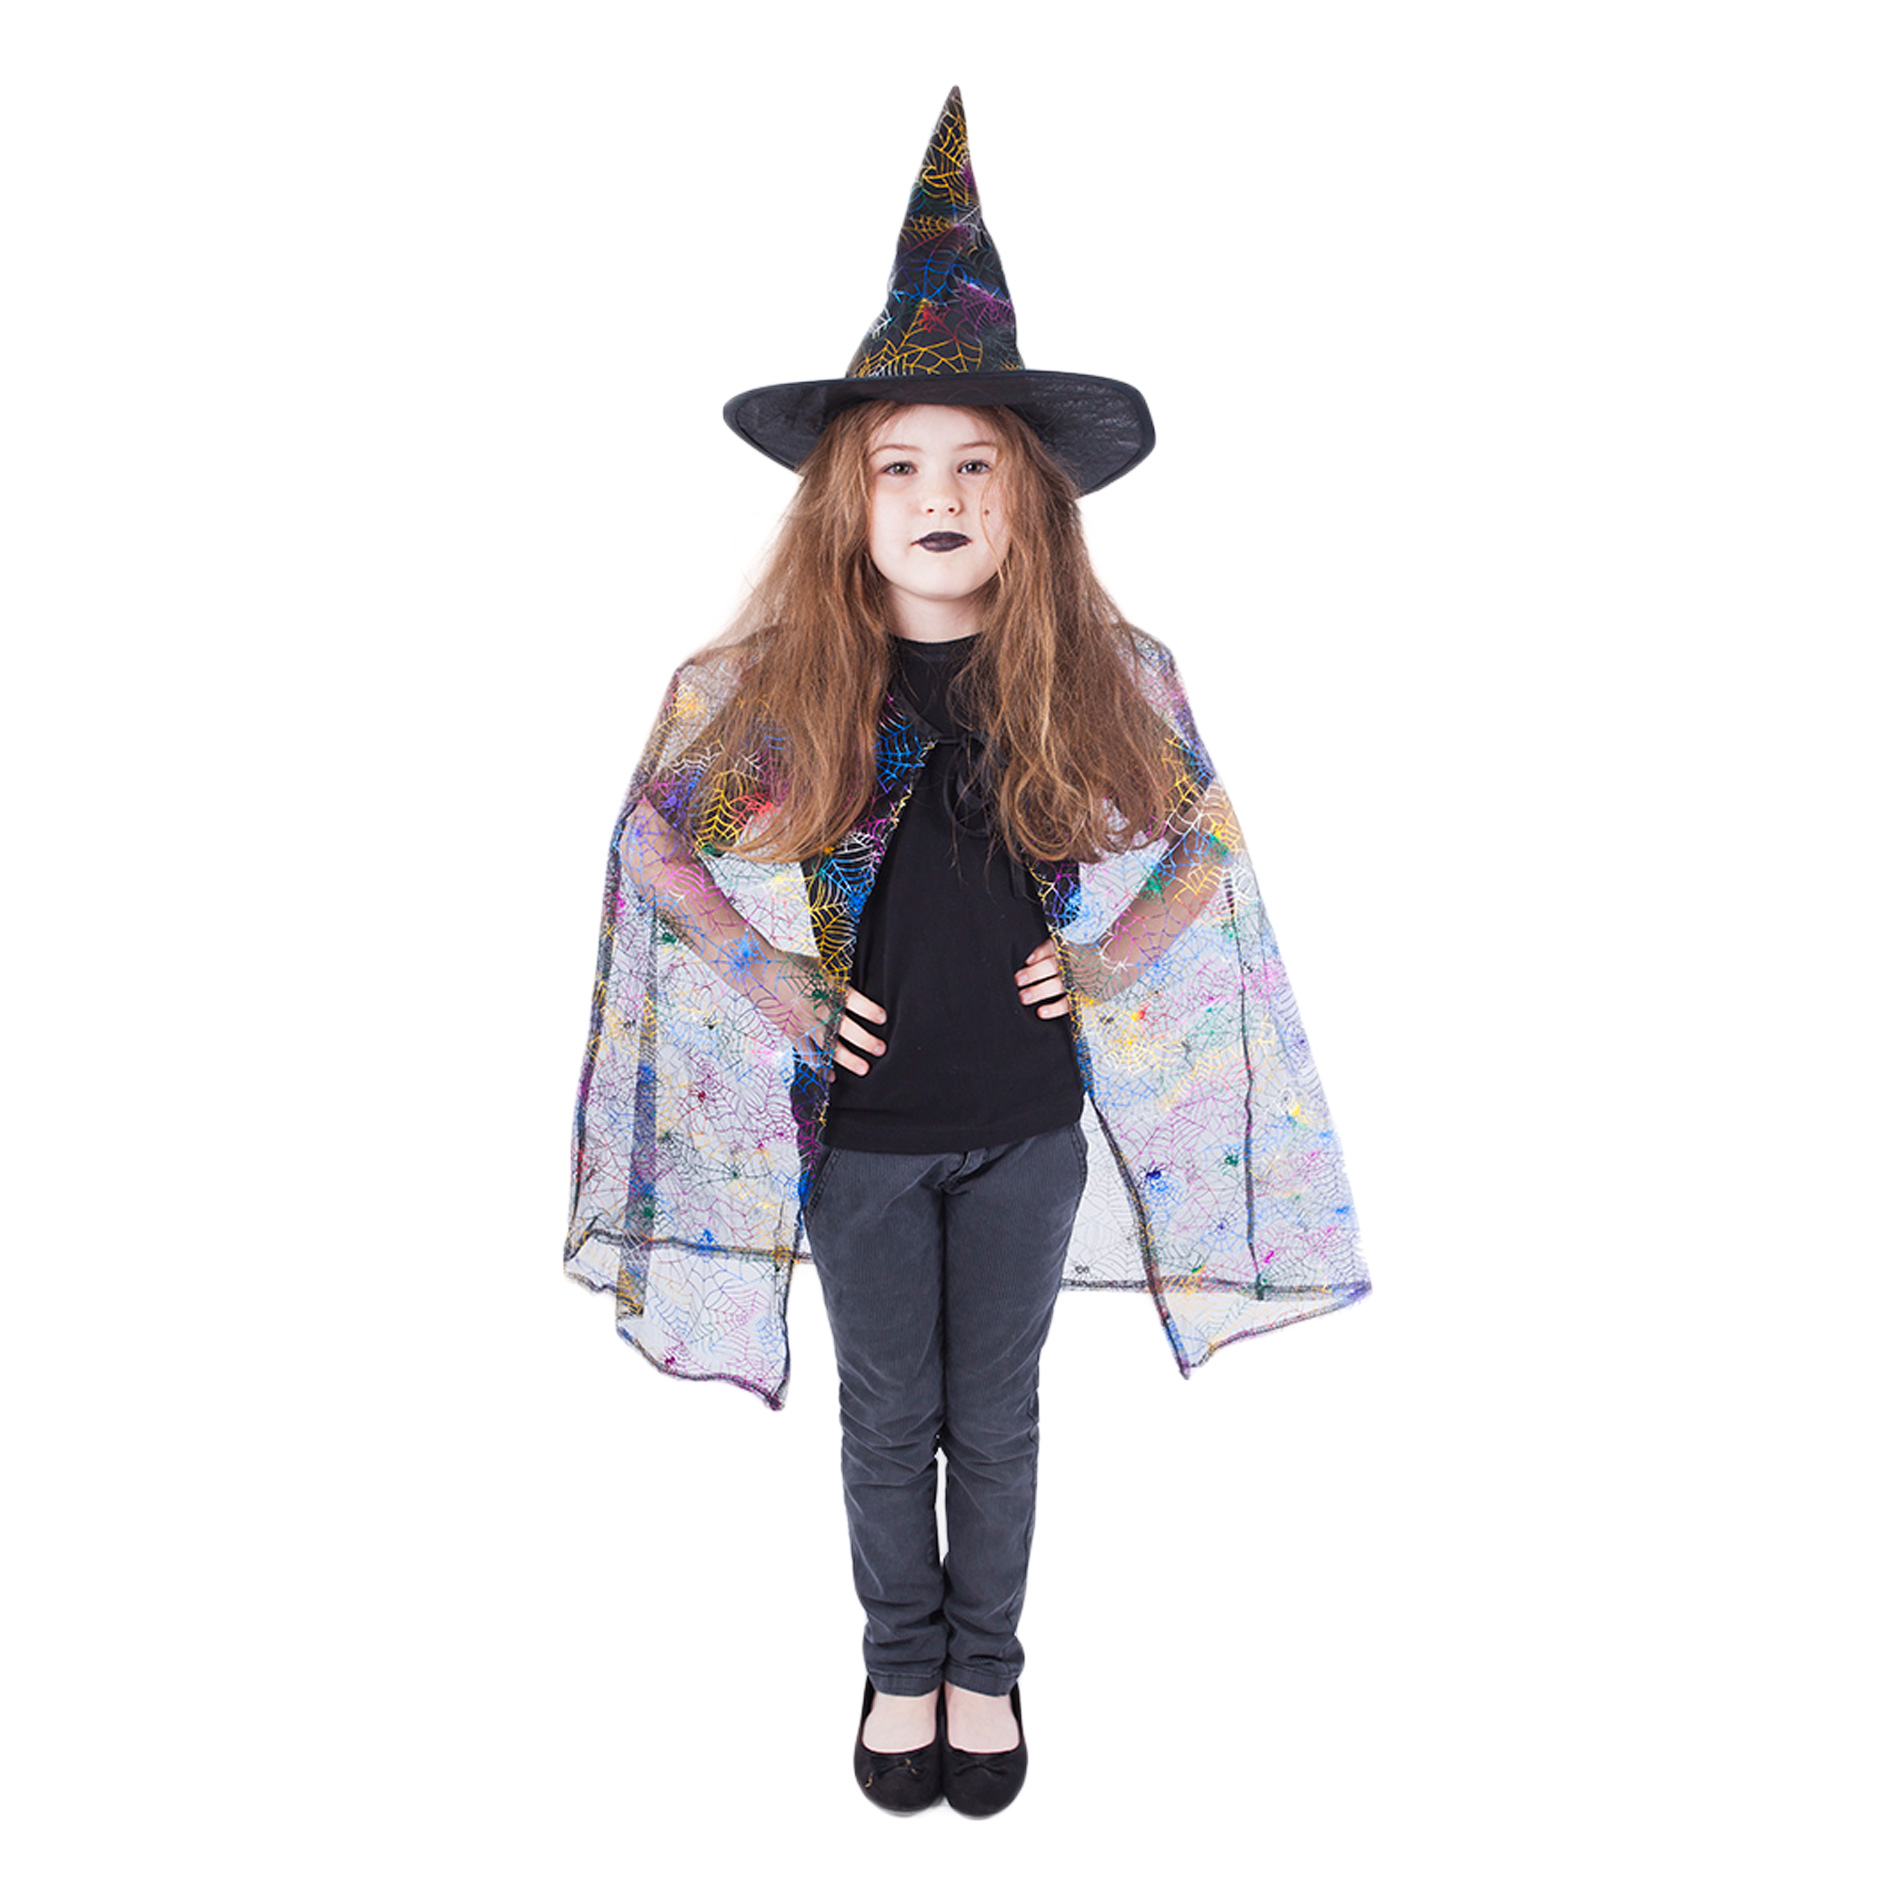 Dětský plášť čarodějnice s kloboukem/Halloween